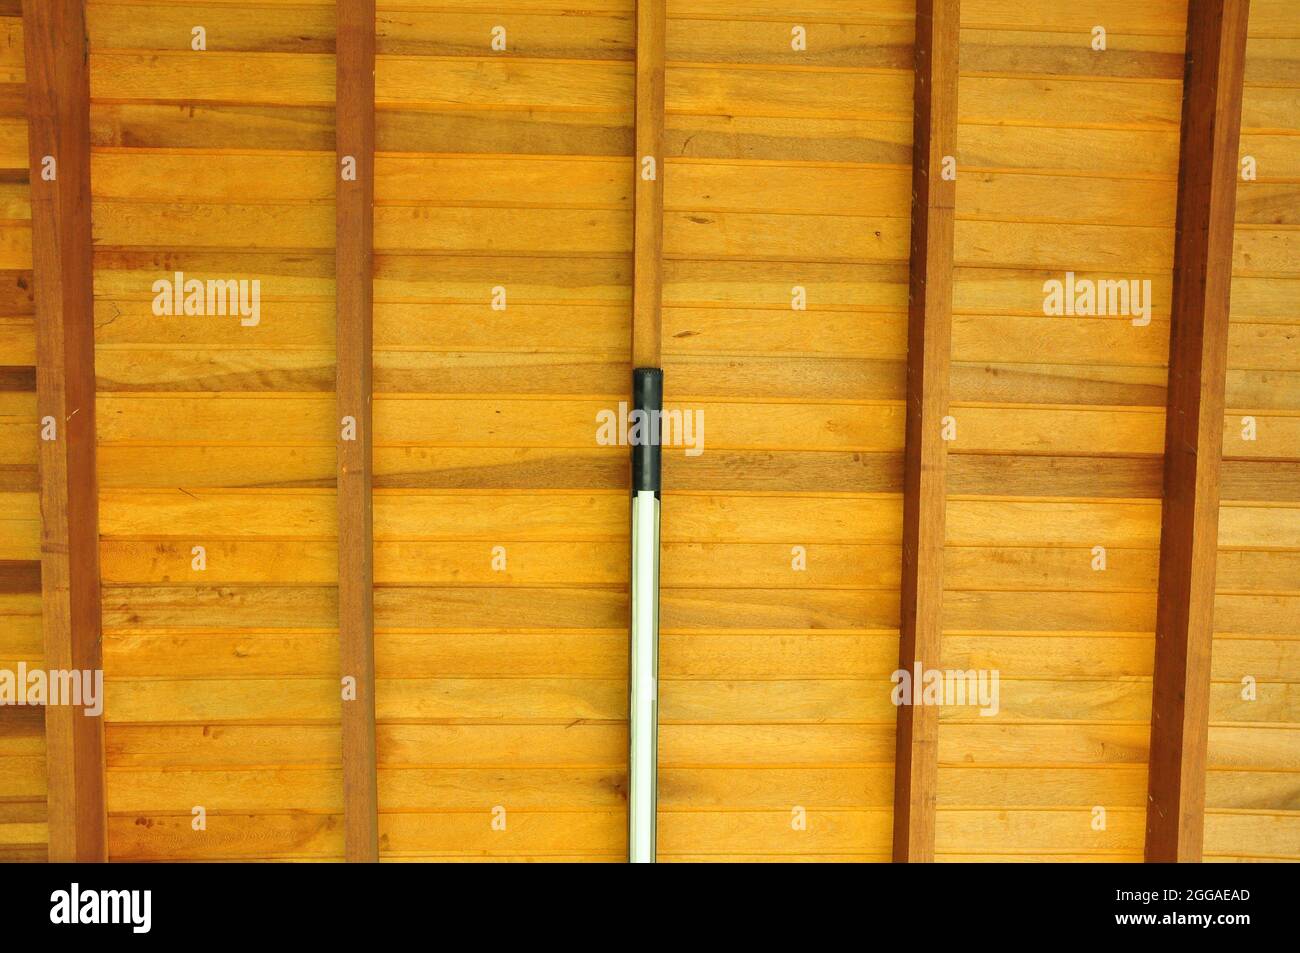 Holz. Holzdecke mit LED-Licht, Balken und Sparren in Symmetrie, in  Naturholzfarbe, Brasilien, Südamerika, Zoom Stockfotografie - Alamy